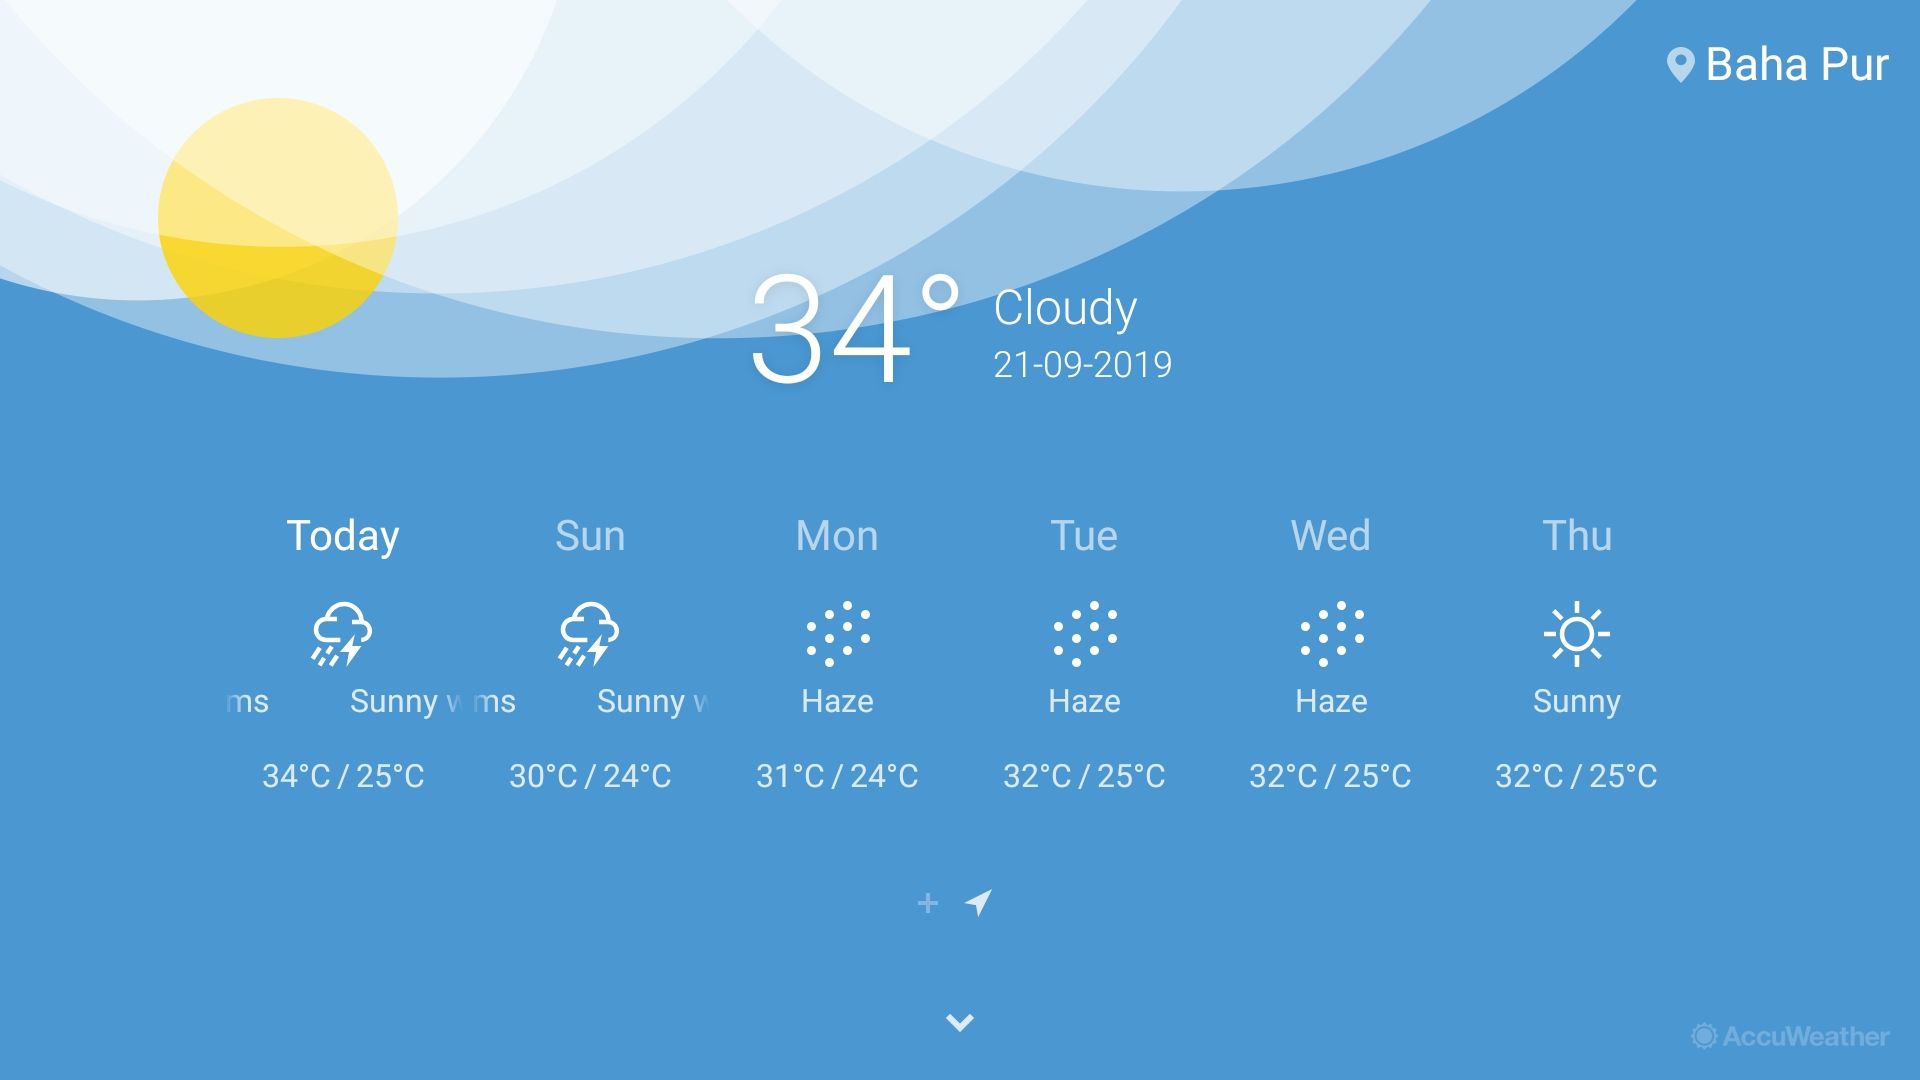 OnePlus TV weather app